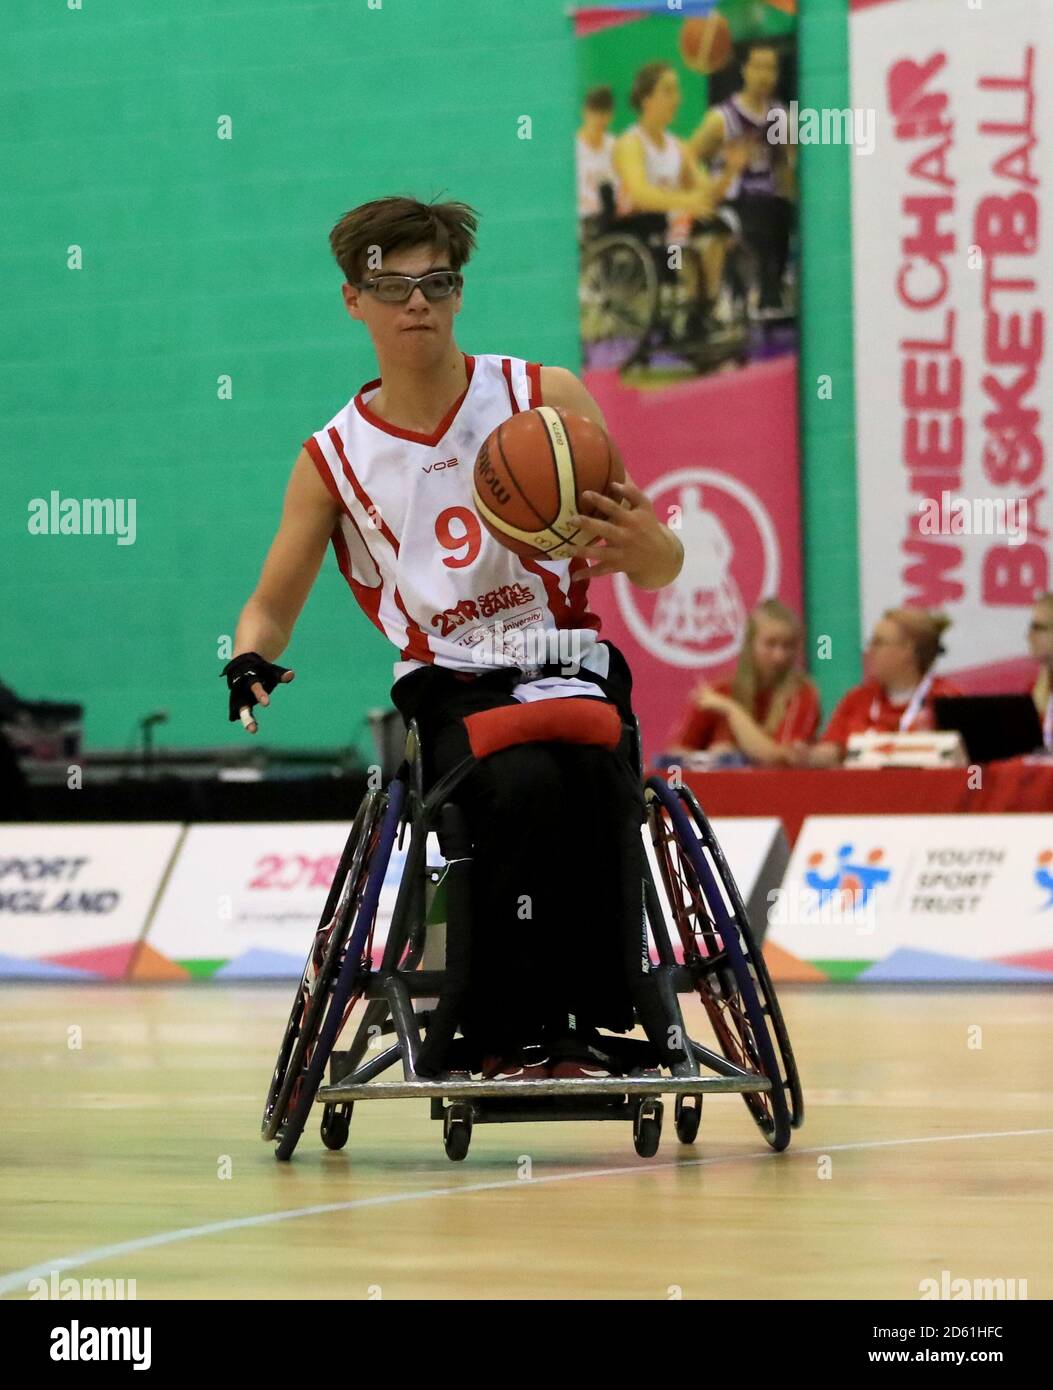 Alex Wilson, du pays de Galles, participe au basketball en fauteuil roulant pendant la journée Deux des Jeux scolaires de l'Université de Loughborough Banque D'Images